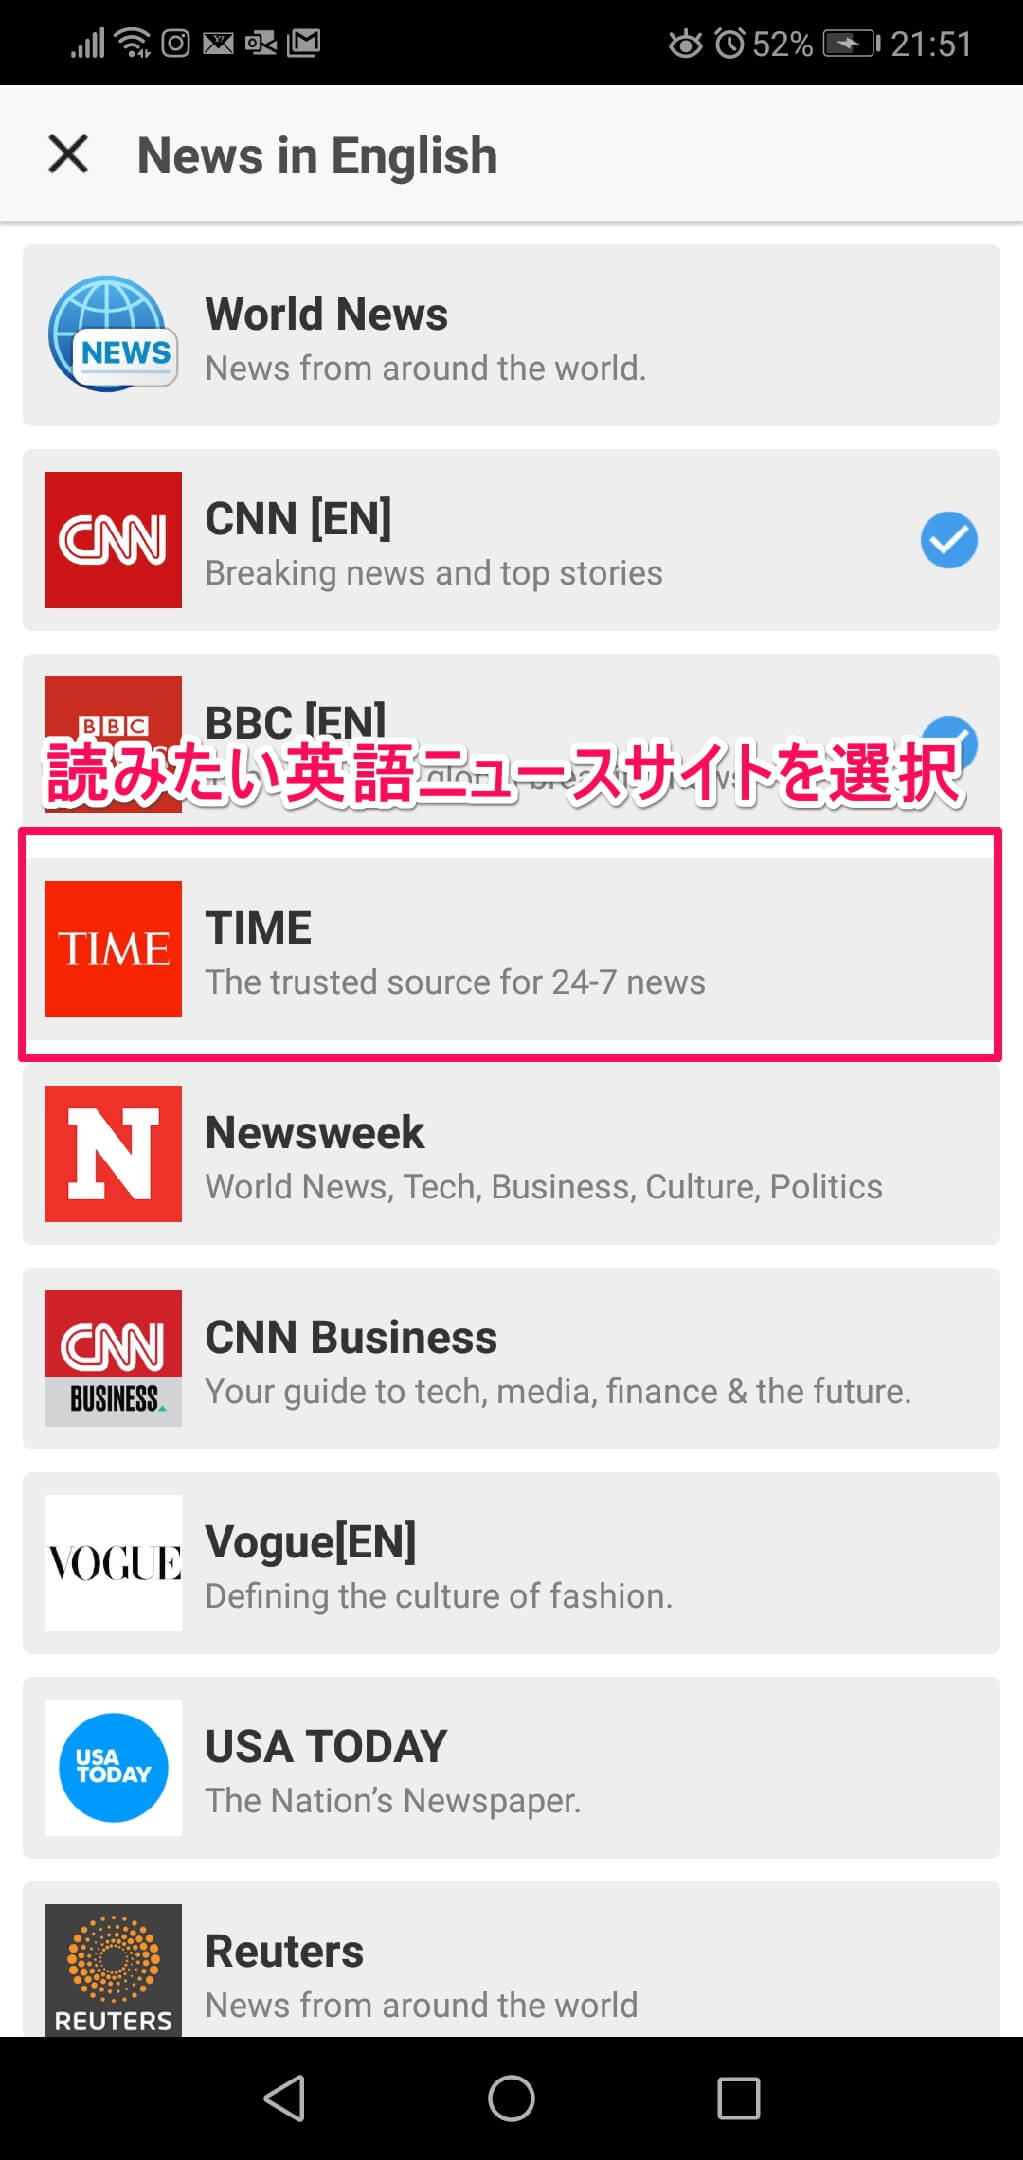 読みたいニュースチャンネルを選択（World Newsなど）して右上の「＋追加」を選択